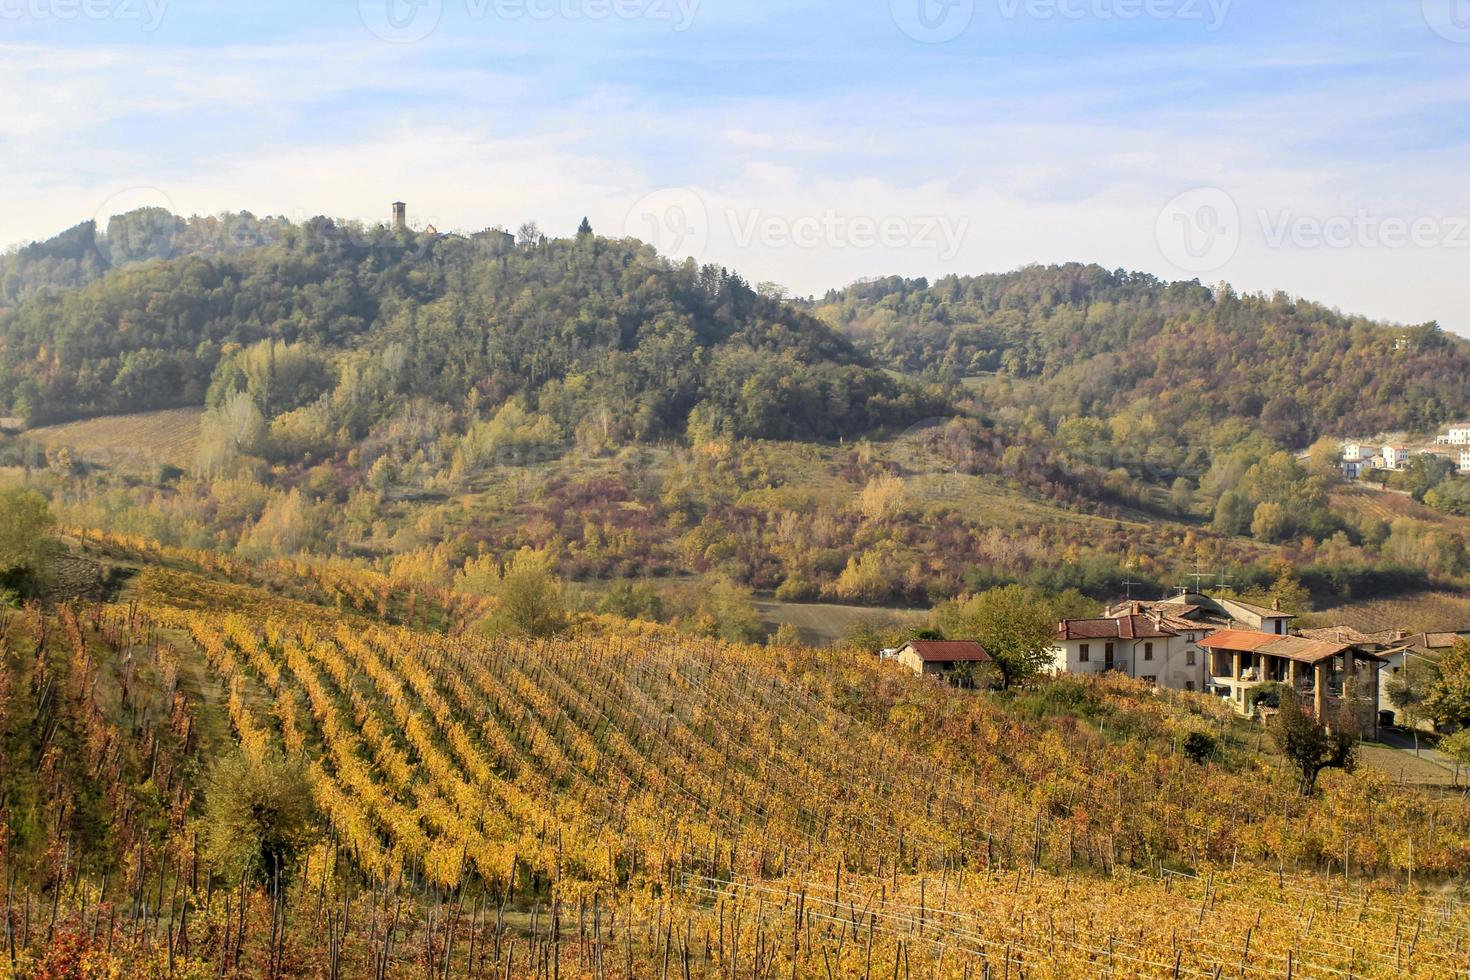 viñedos y paisajes del interior del piamonte, italia foto